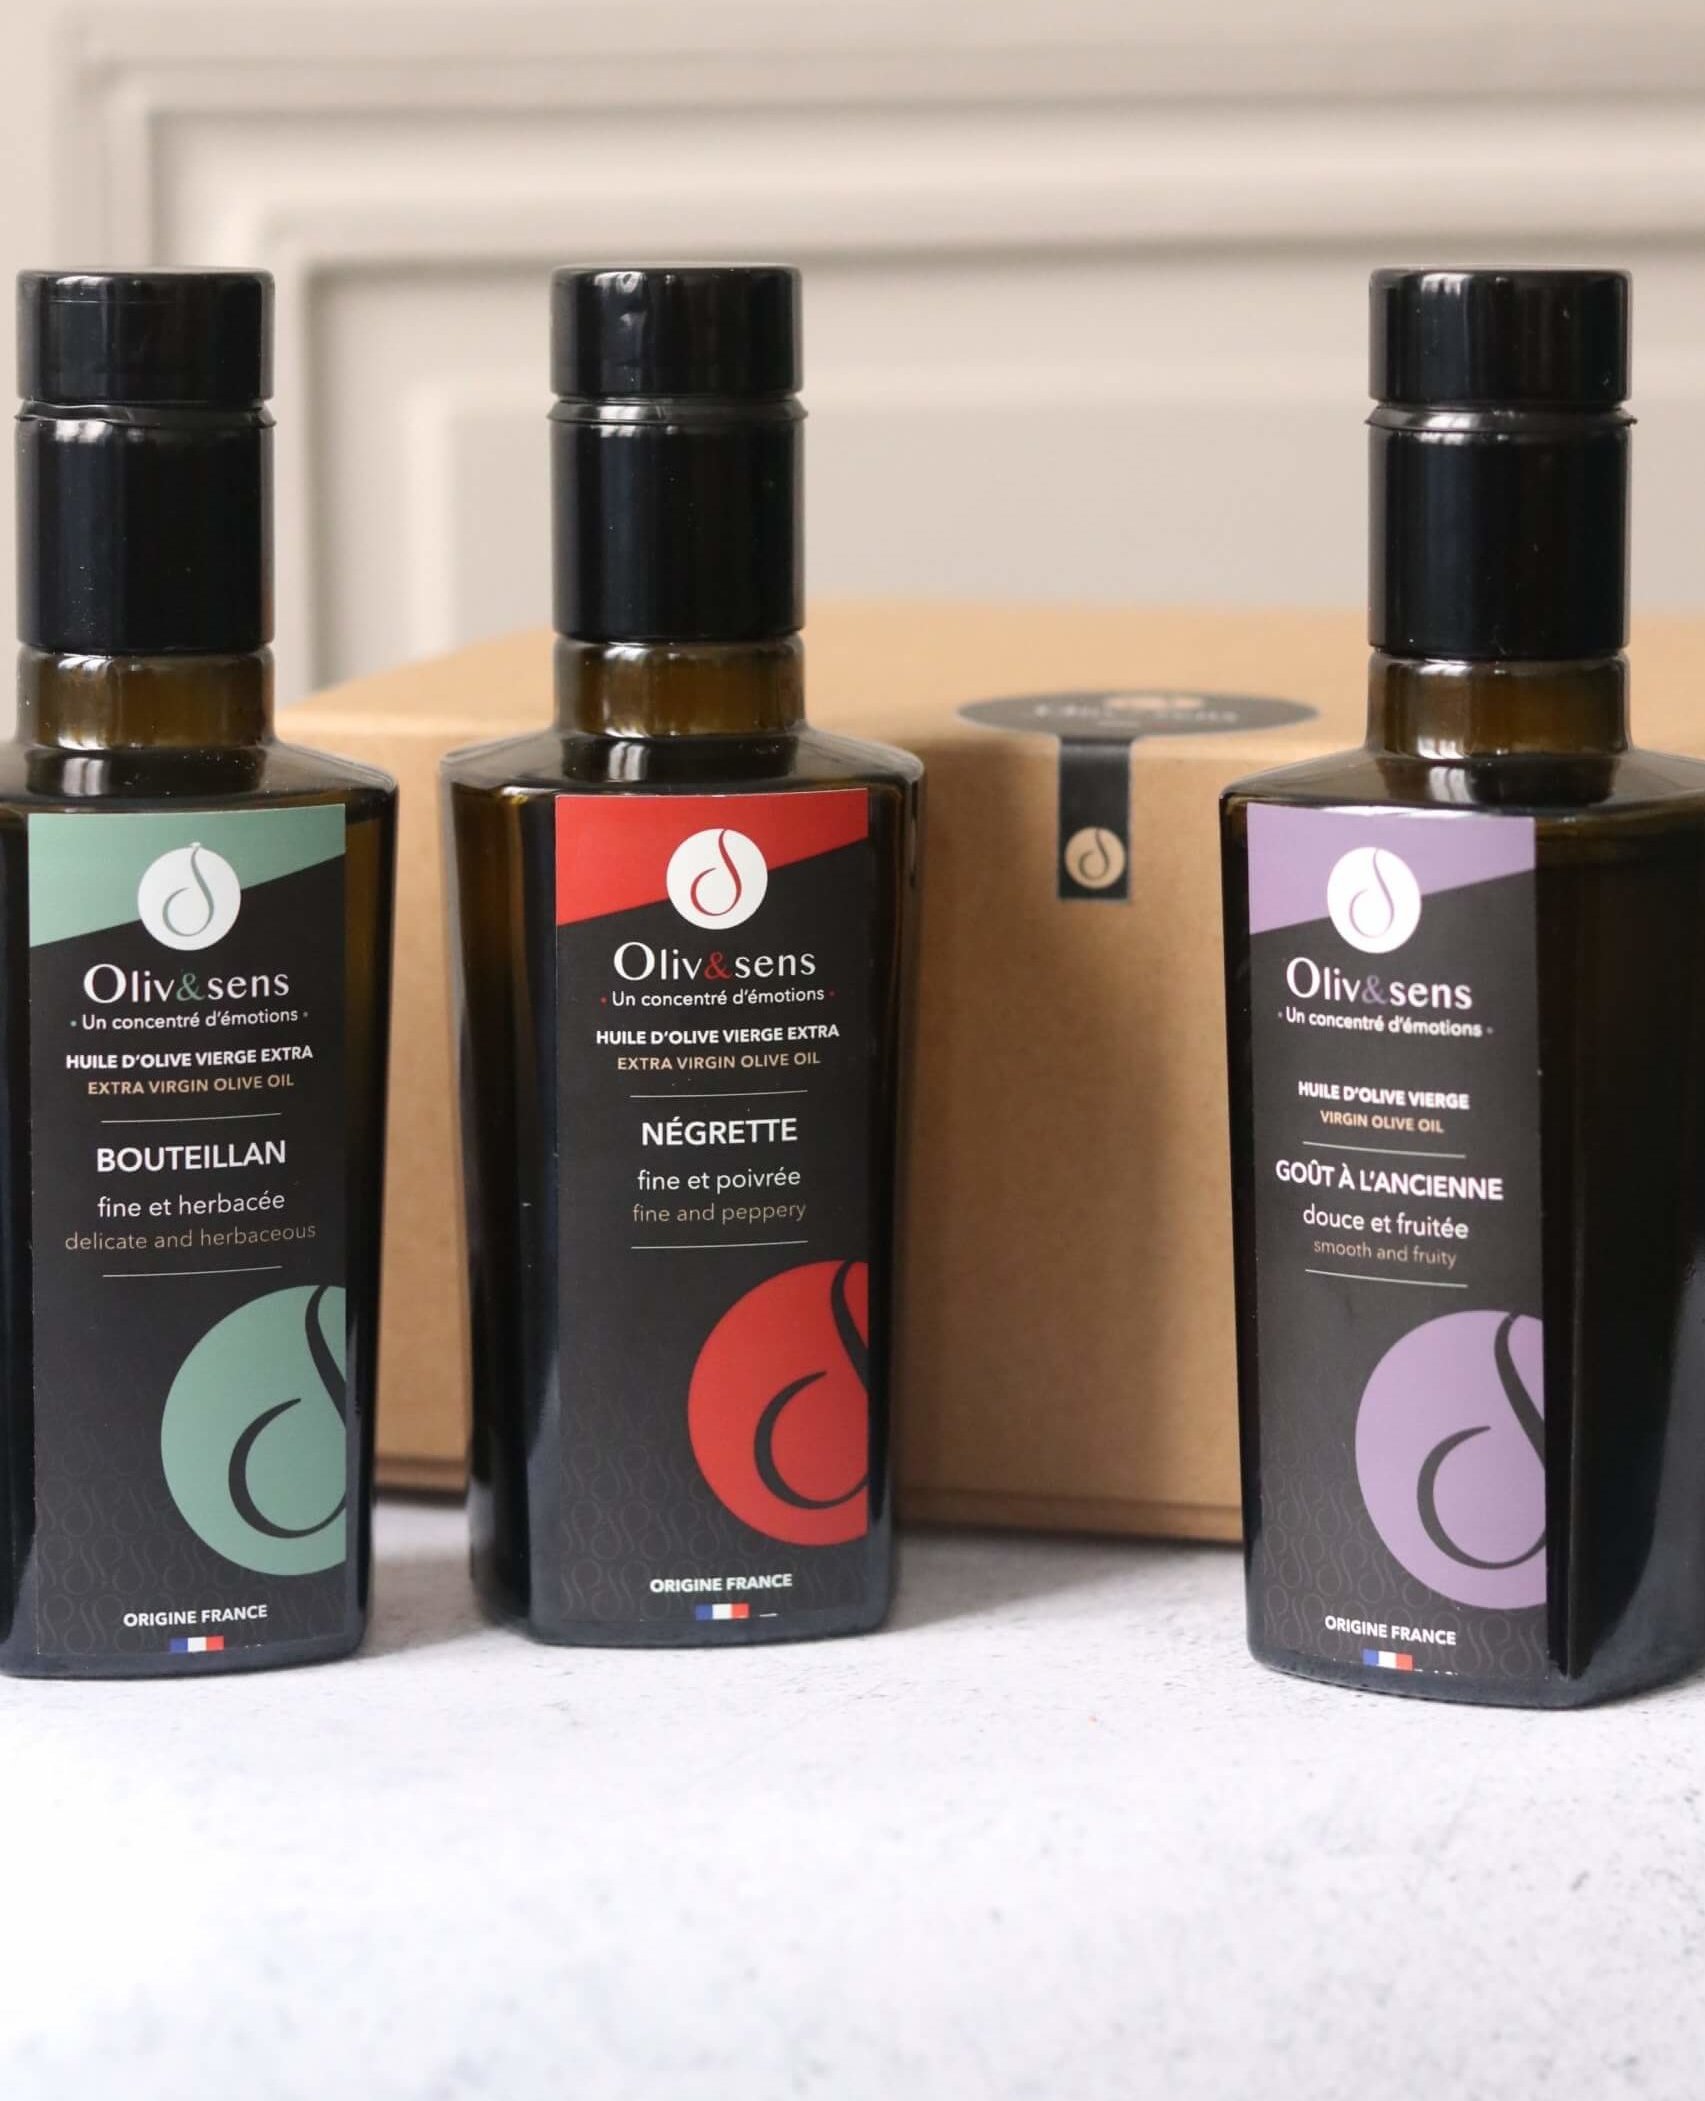 coffret cadeau huiles d'olive les 3 fruités Oliv&sens huiles d'olive vierge extra Olive et sens Olive & sens huiles d'olive françaises producteur huiles d'olive coffret cadeau gourmet